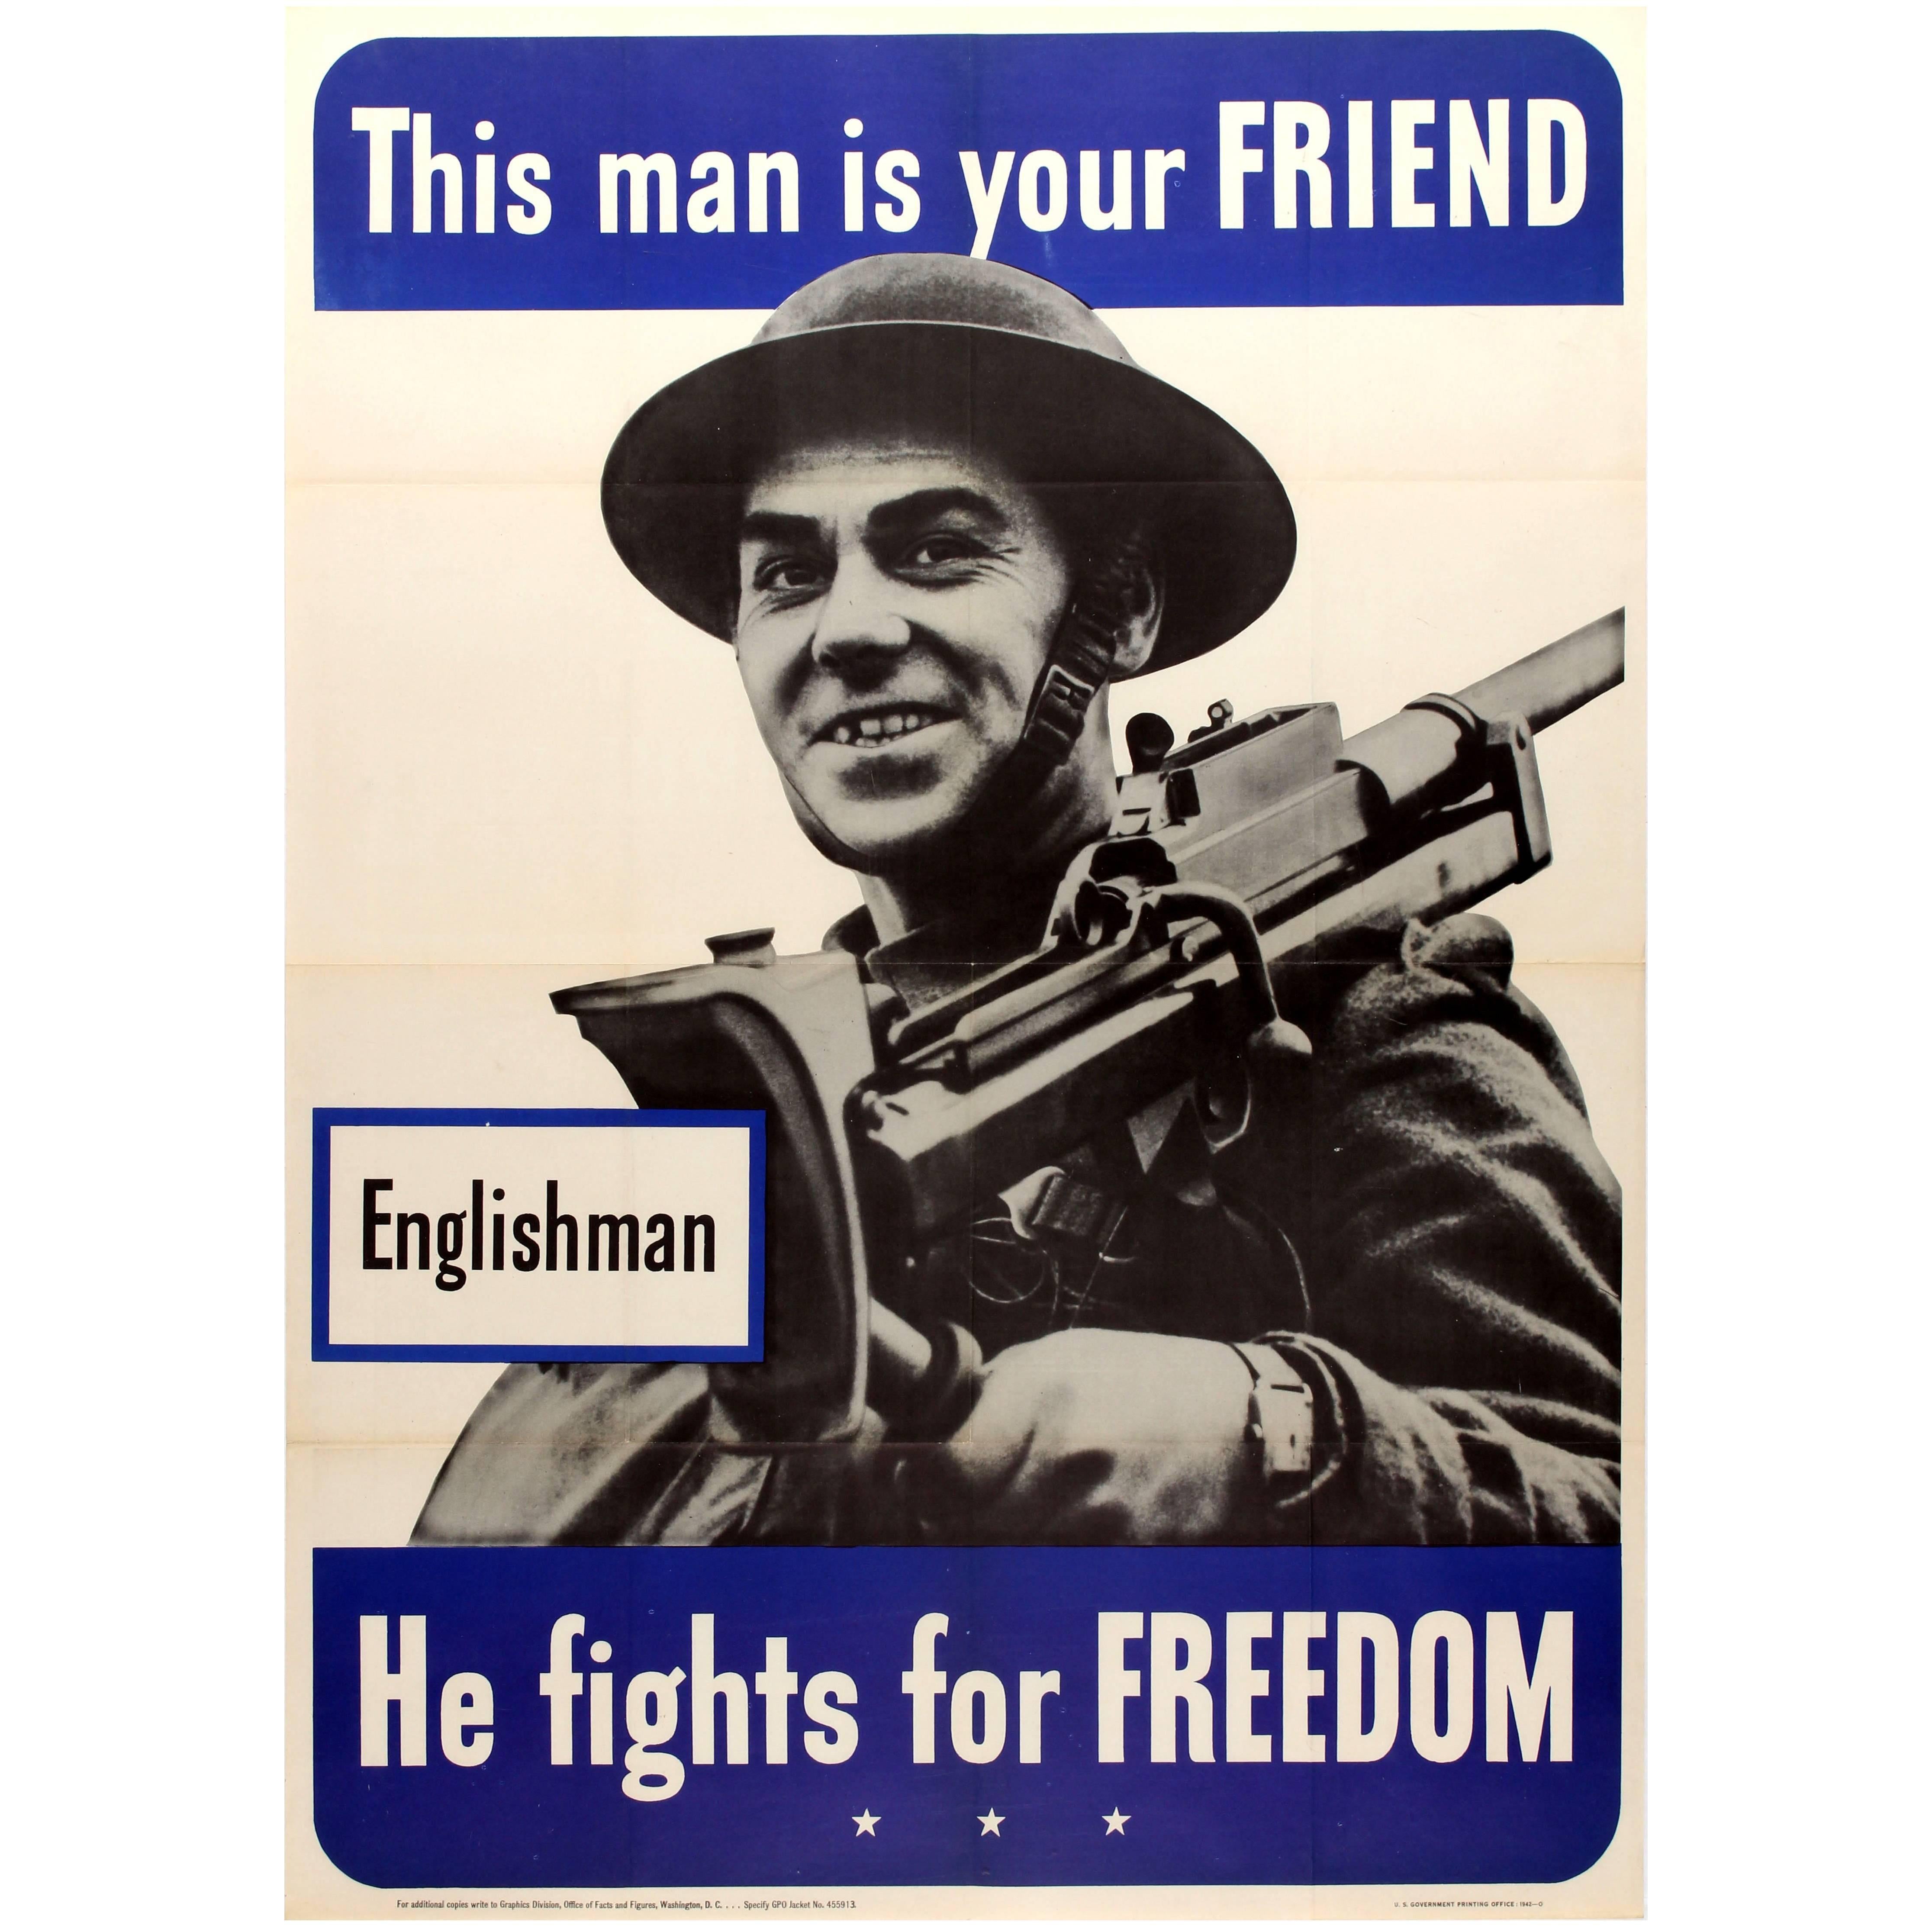 Affiche originale de la Seconde Guerre mondiale, Englishman, This Man Is Your Friend ( Cet homme est votre ami il lutte pour la liberté)